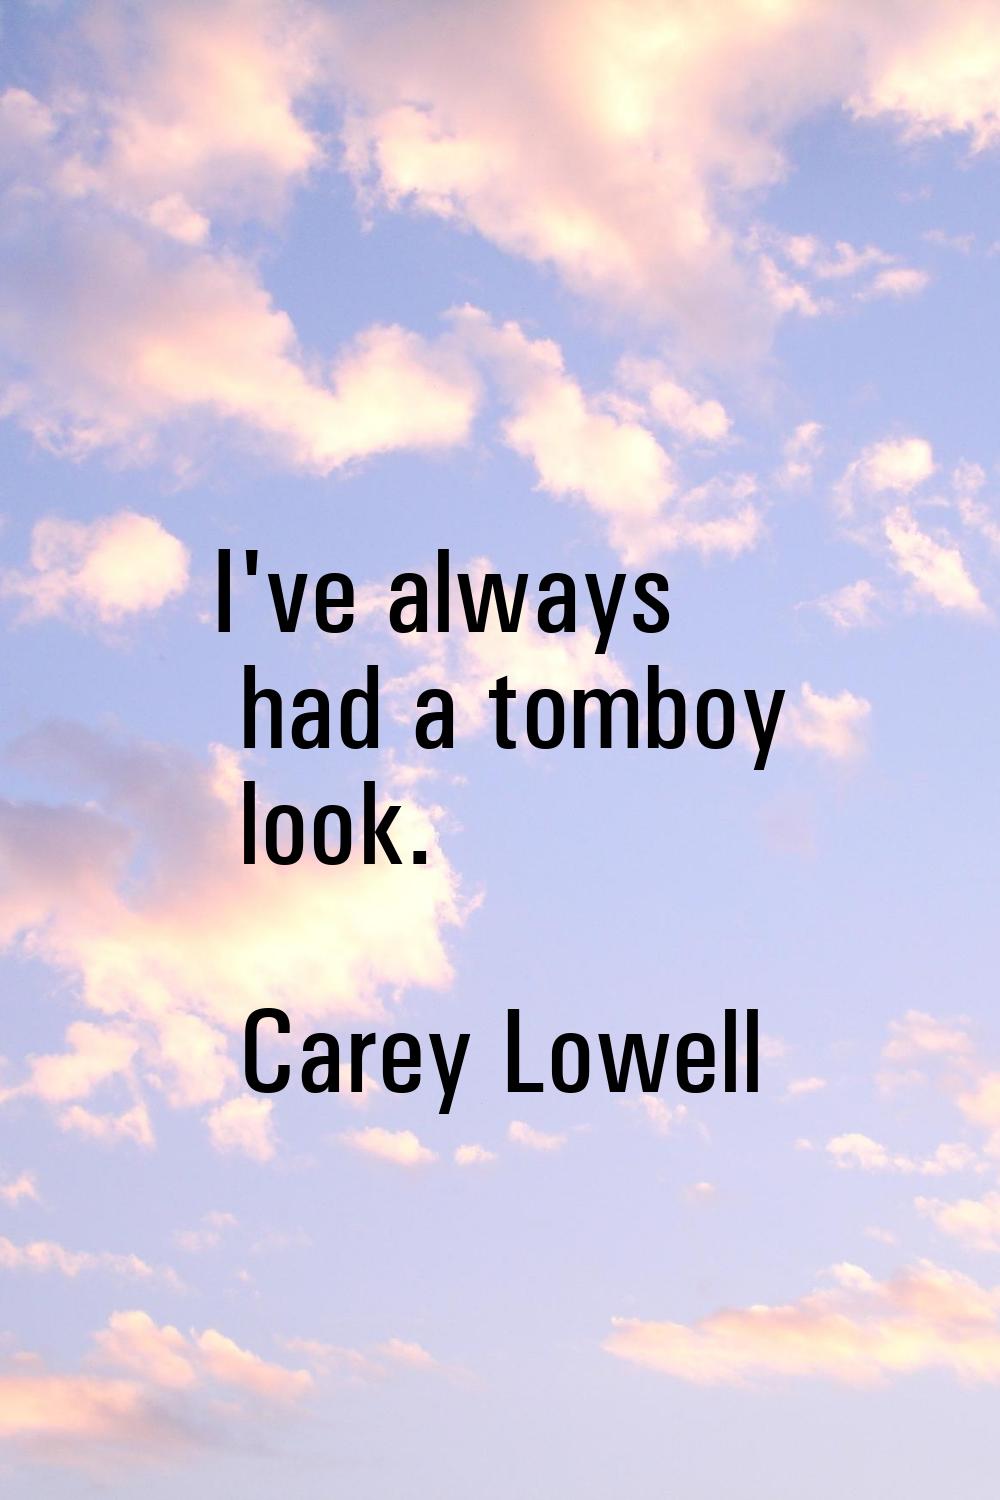 I've always had a tomboy look.